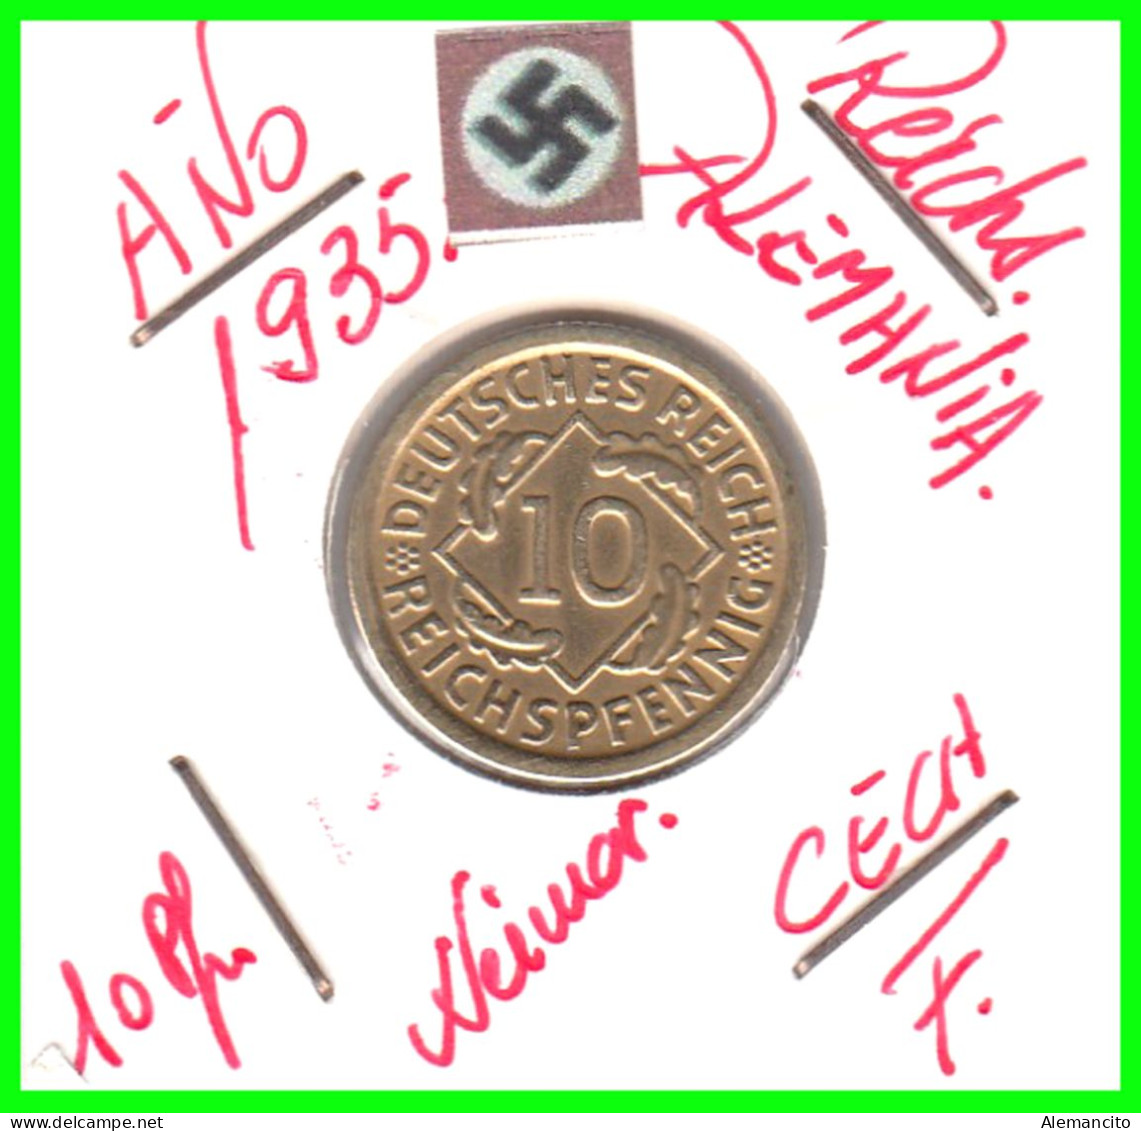 GERMANY REPÚBLICA DE WEIMAR 10 PFENNIG DE PENSIÓN ( 1935 CECA - F ) MONEDA DEL AÑO 1923-1936 (RENTENPFENNIG KM # 32 - 10 Renten- & 10 Reichspfennig